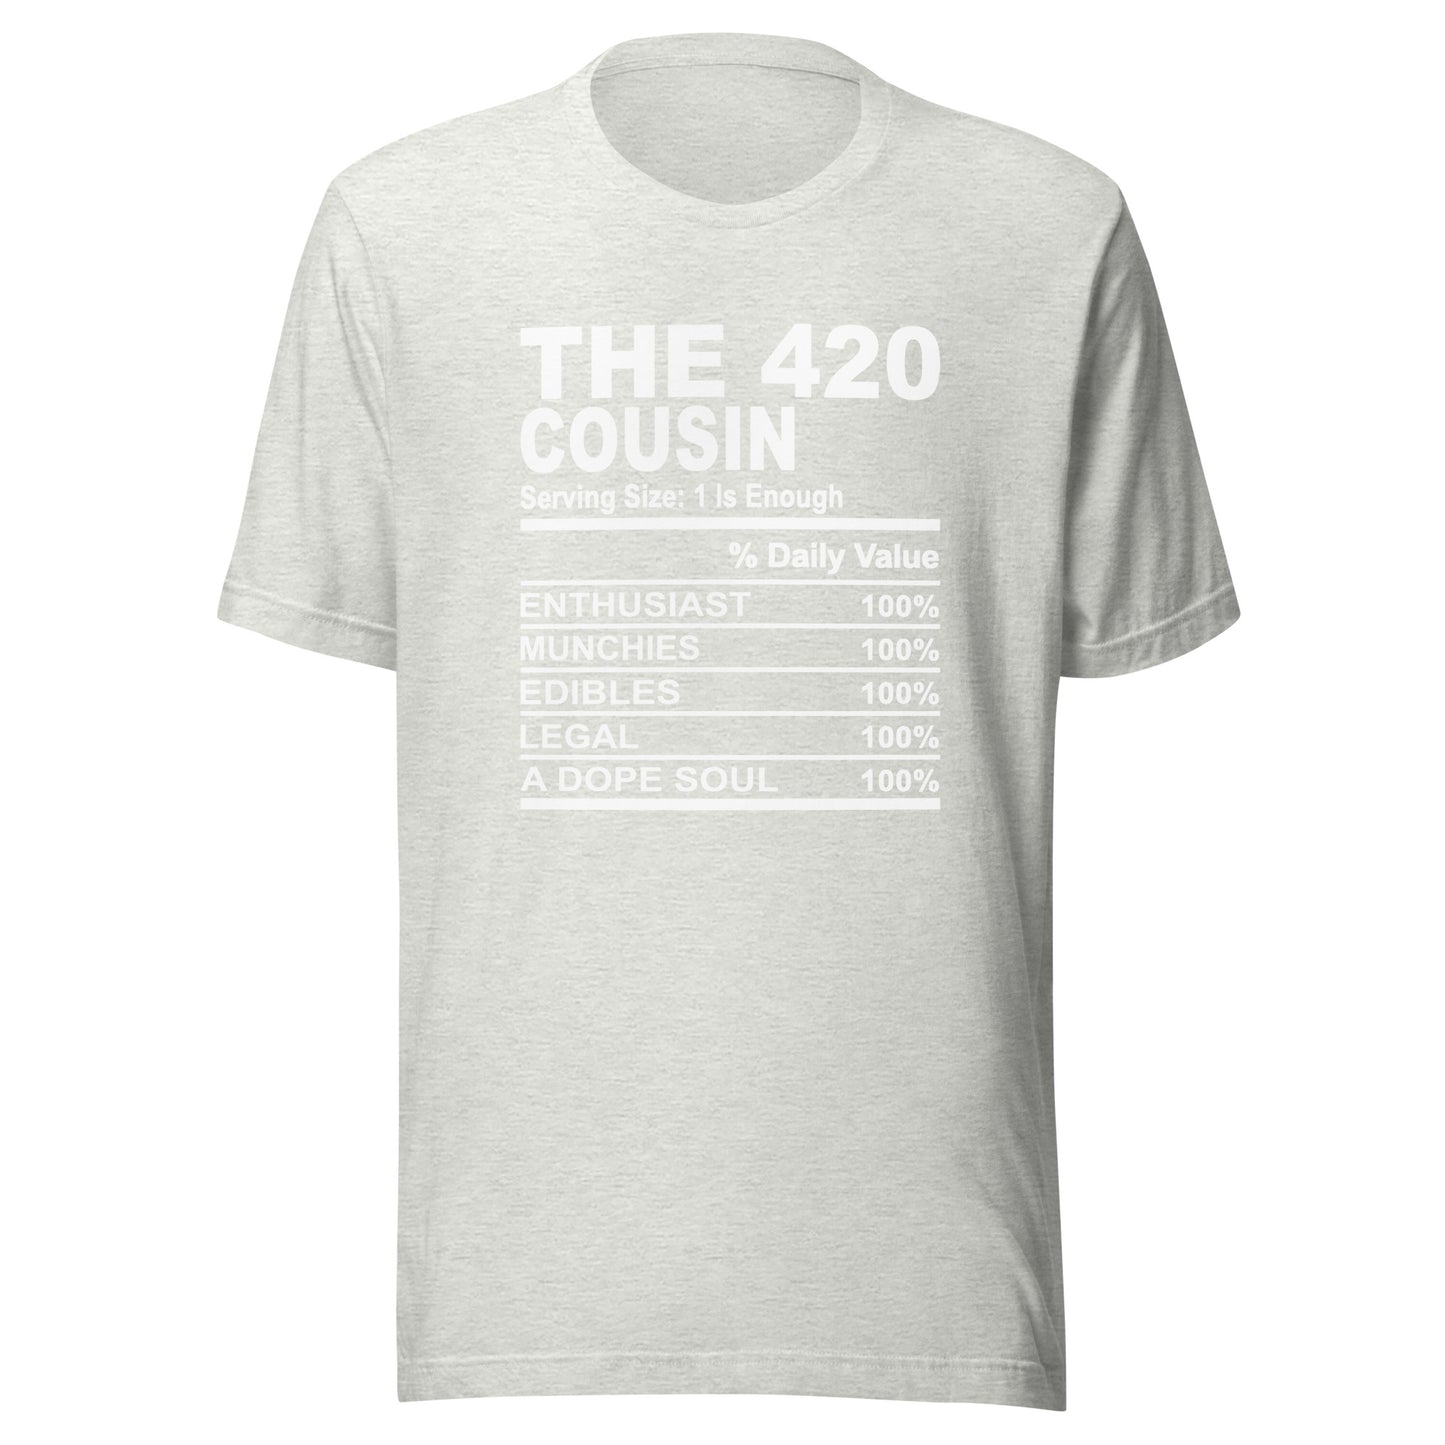 THE 420 COUSIN - L-XL - Unisex T-Shirt (white print)